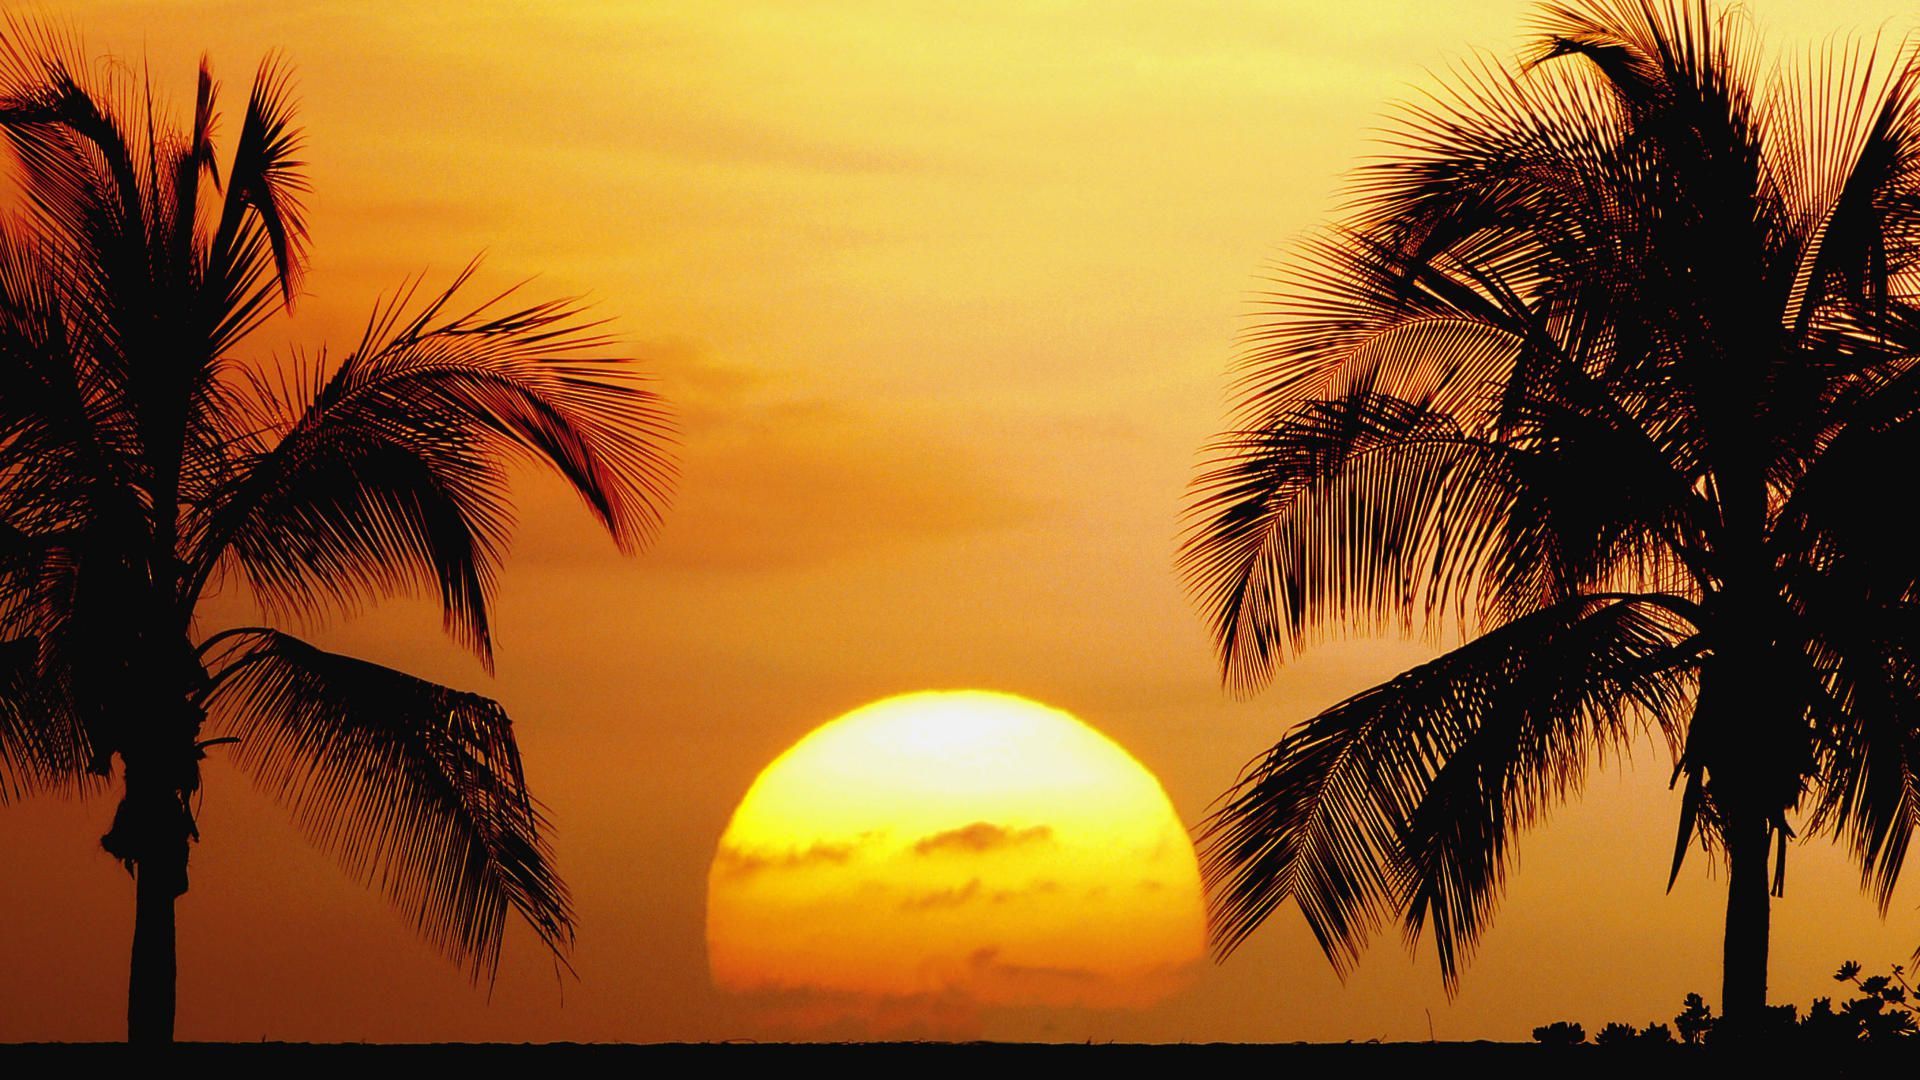 Background, desktop, sunset, hawaii, wallpaper, kailua, beach